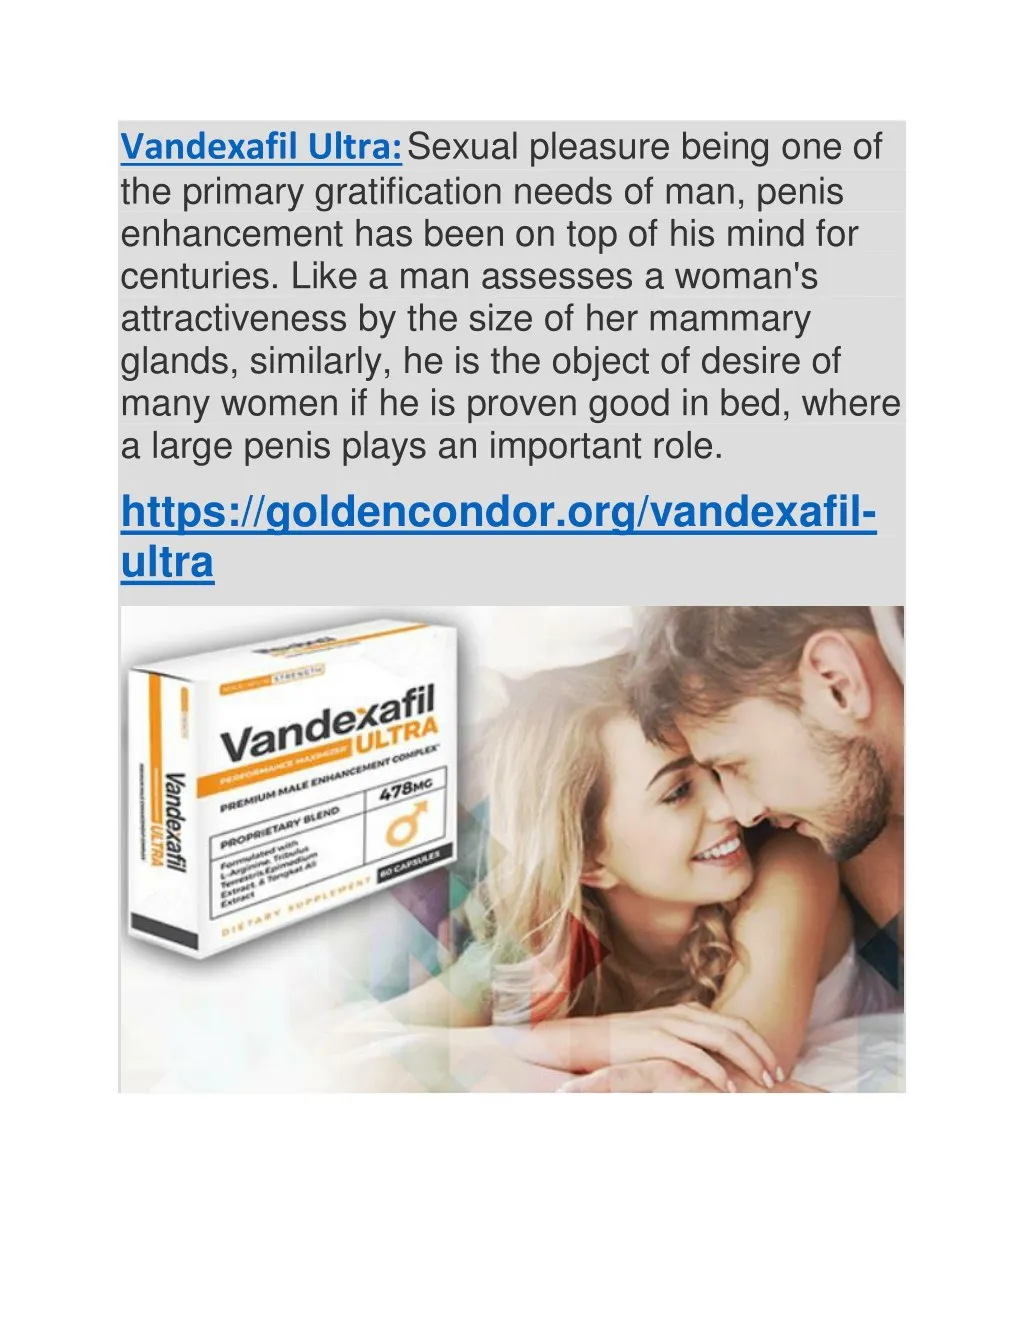 vandexafil ultra sexual pleasure being